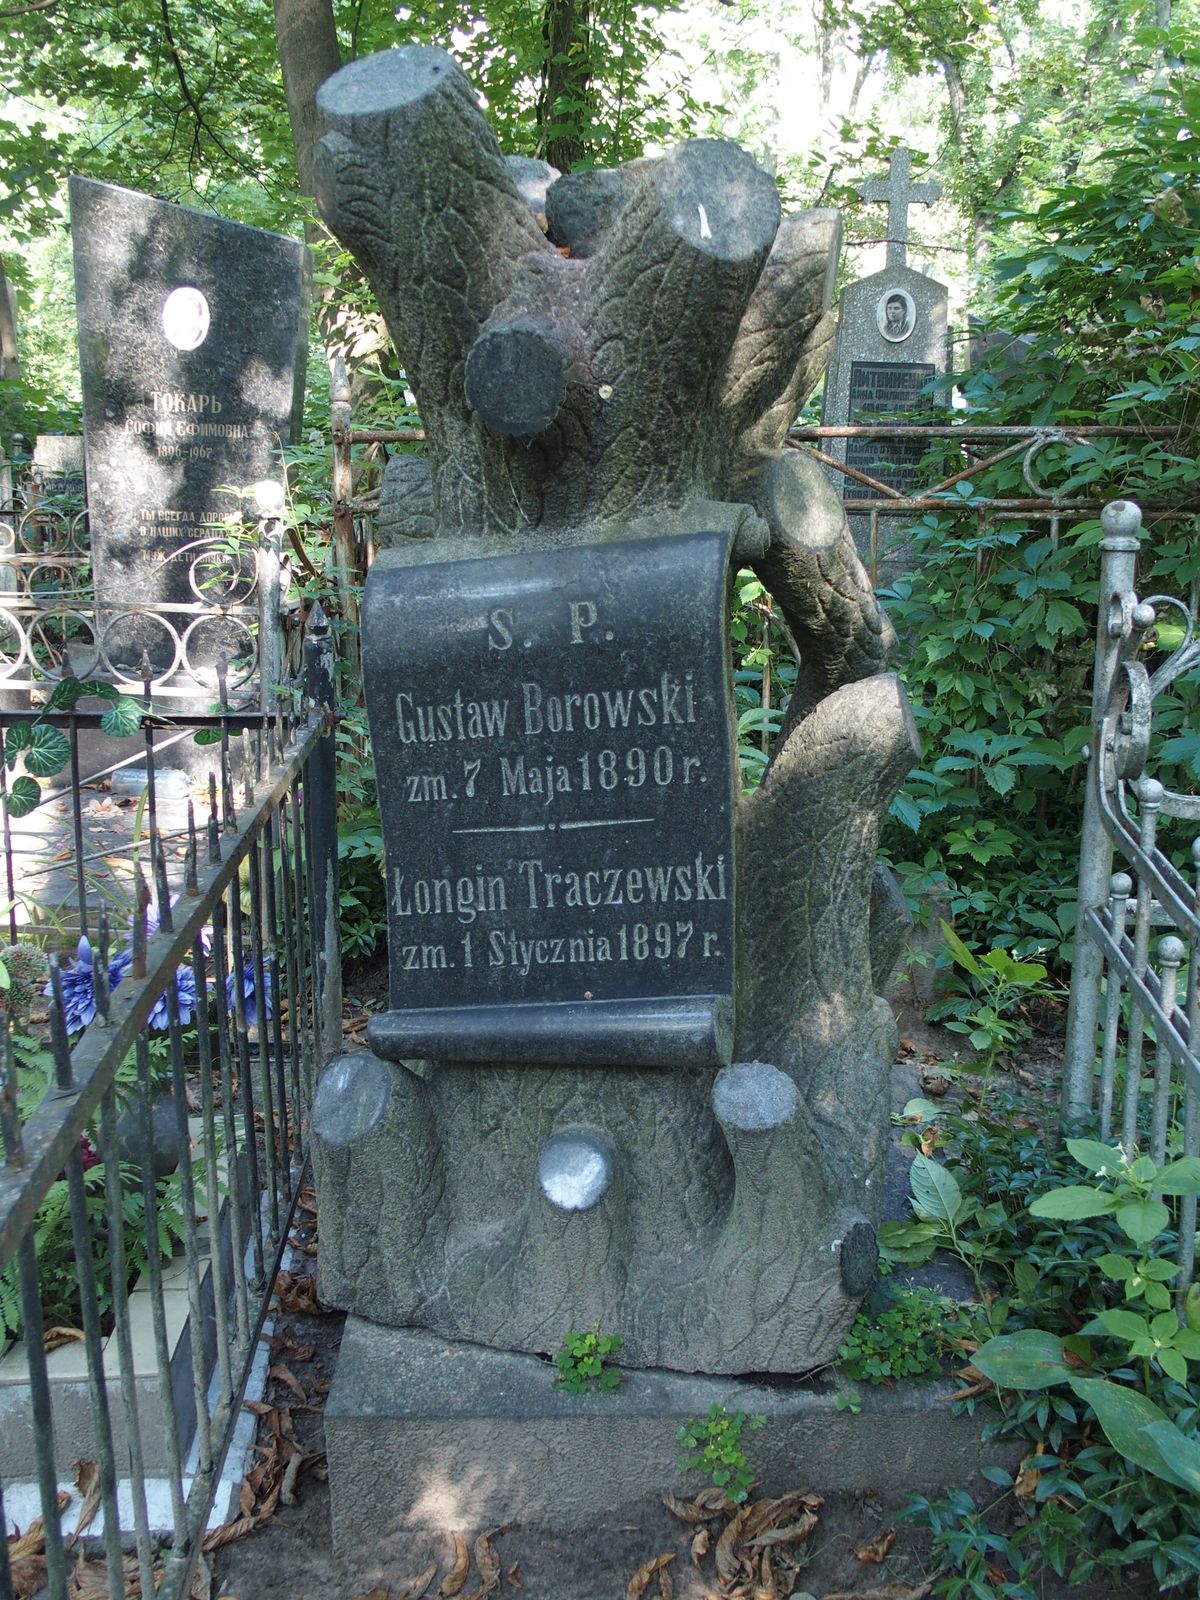 Tombstone of Gustaw Borowski, Longin Traczewski